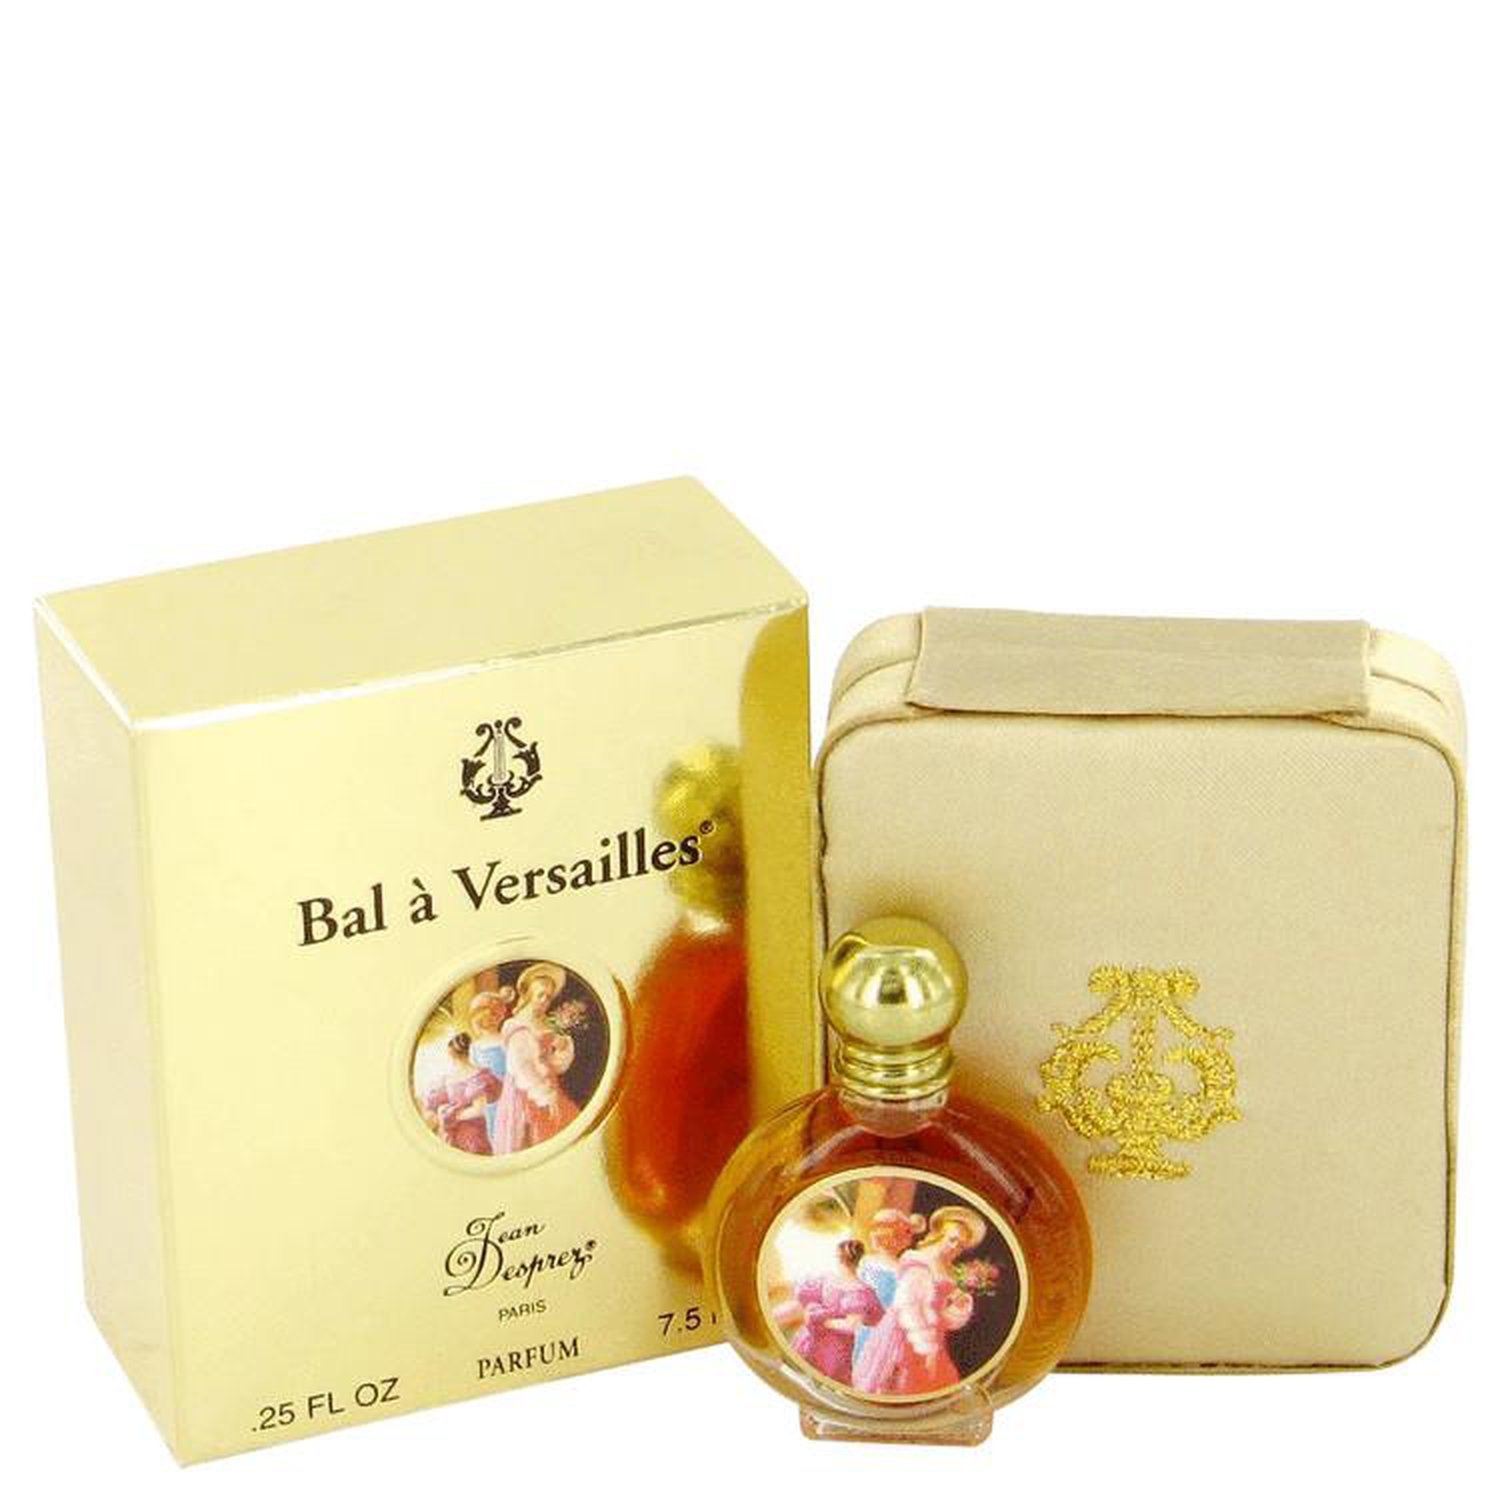 BAL A VERSAILLES par Jean Desprez Pure Perfume .25 oz (Femme)